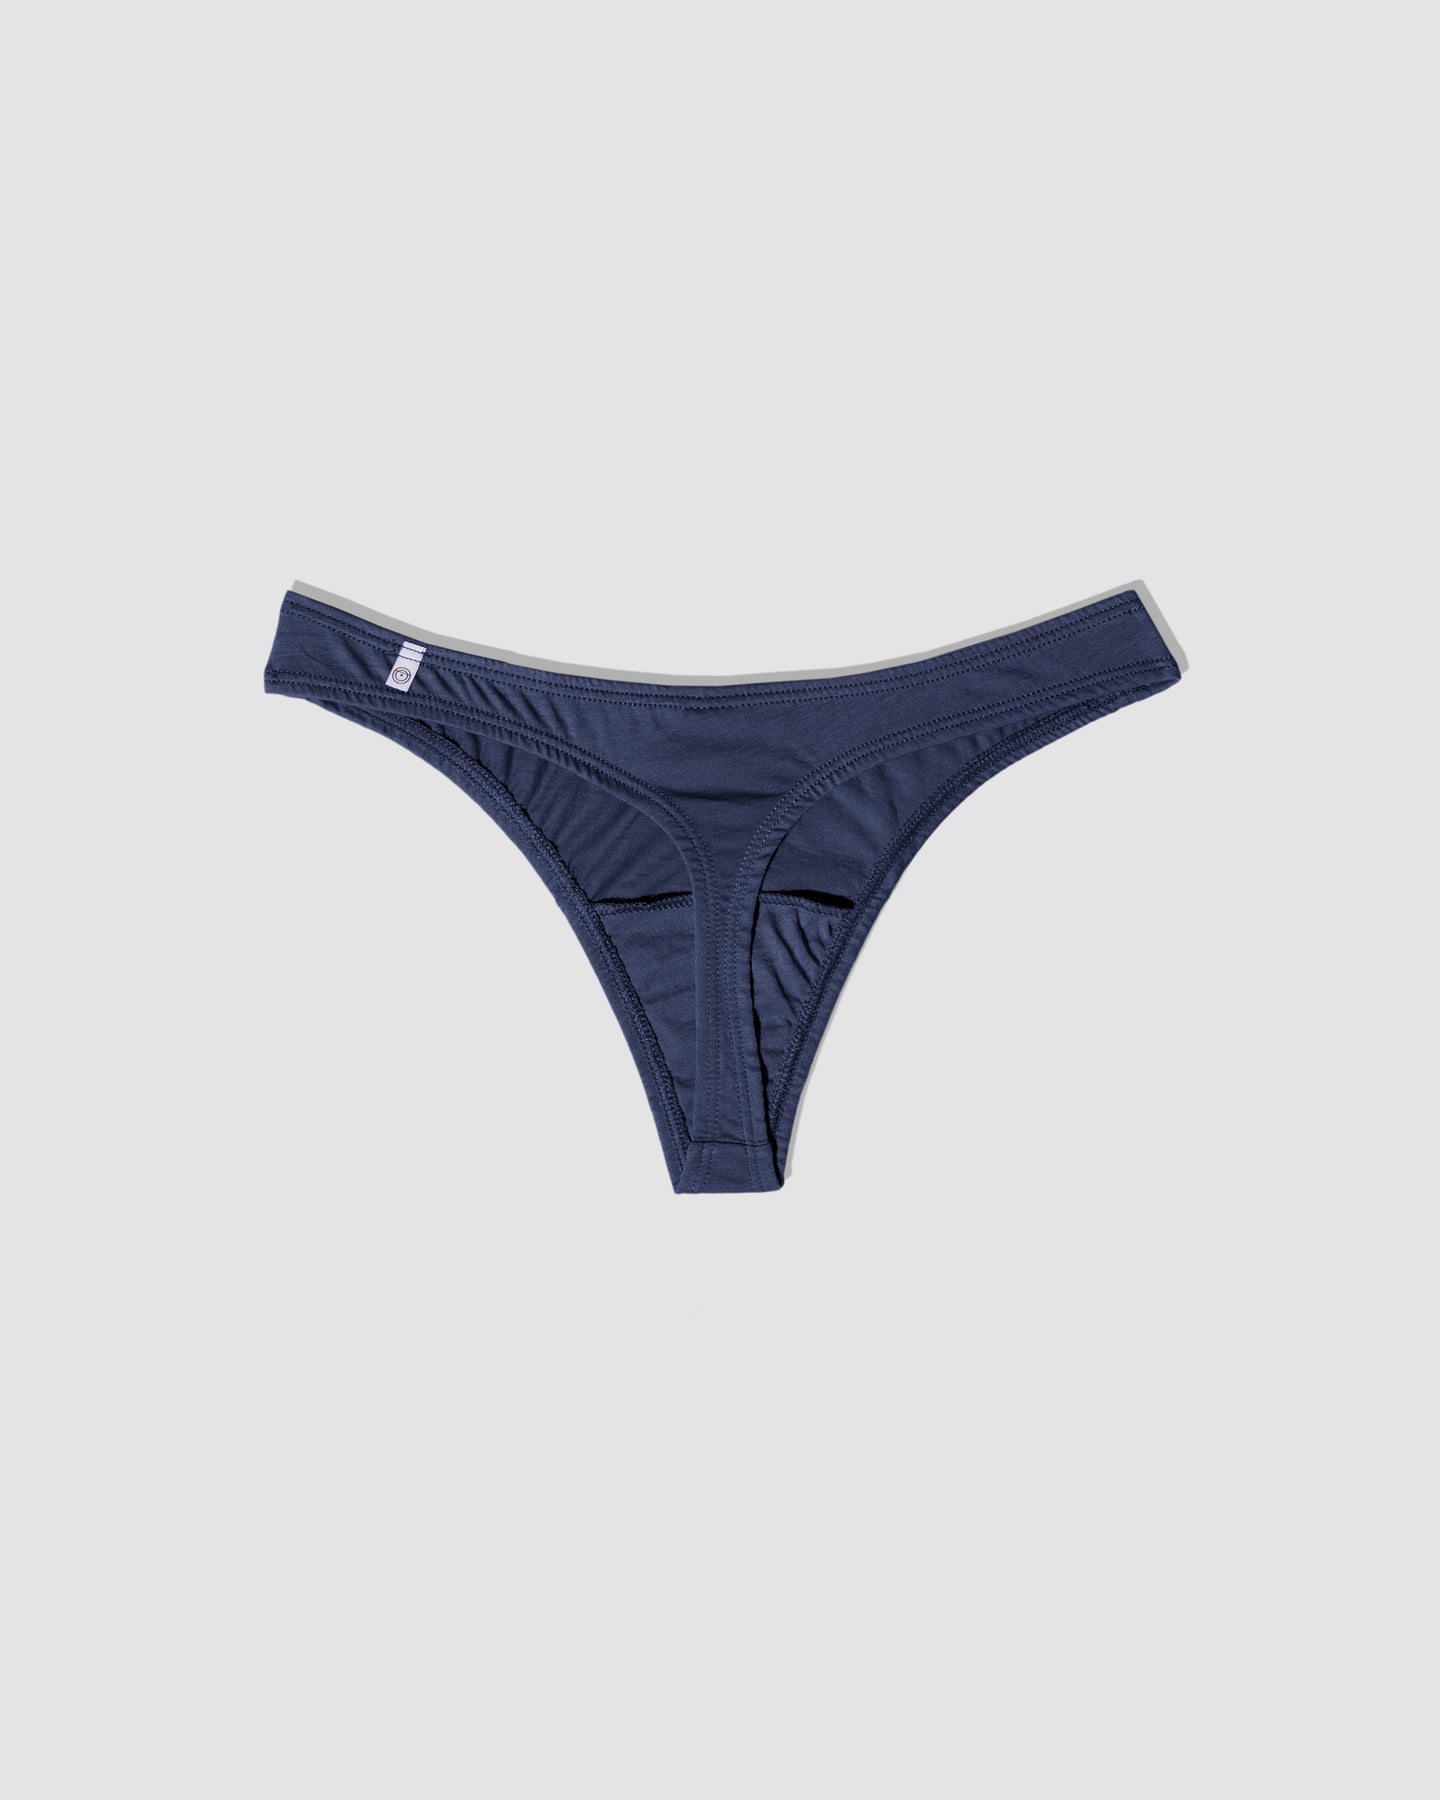 Thongs G-string Underwear Panties Briefs